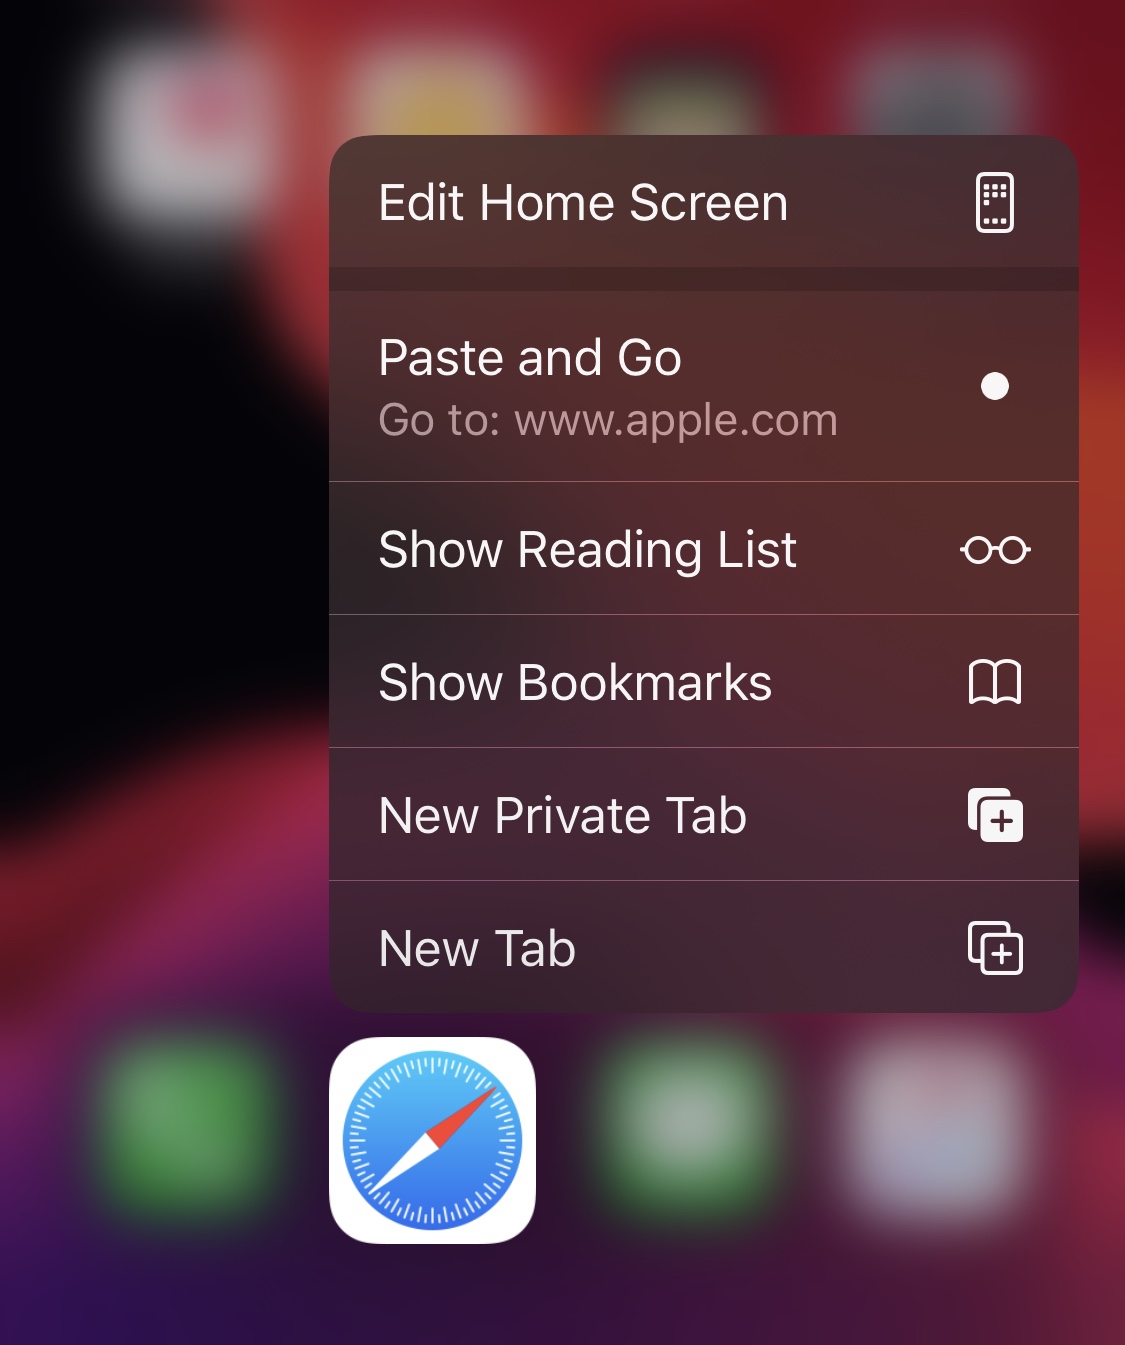 PasteAndGo2 добавляет новую функцию поиска в меню Haptic Touch на iOS 12